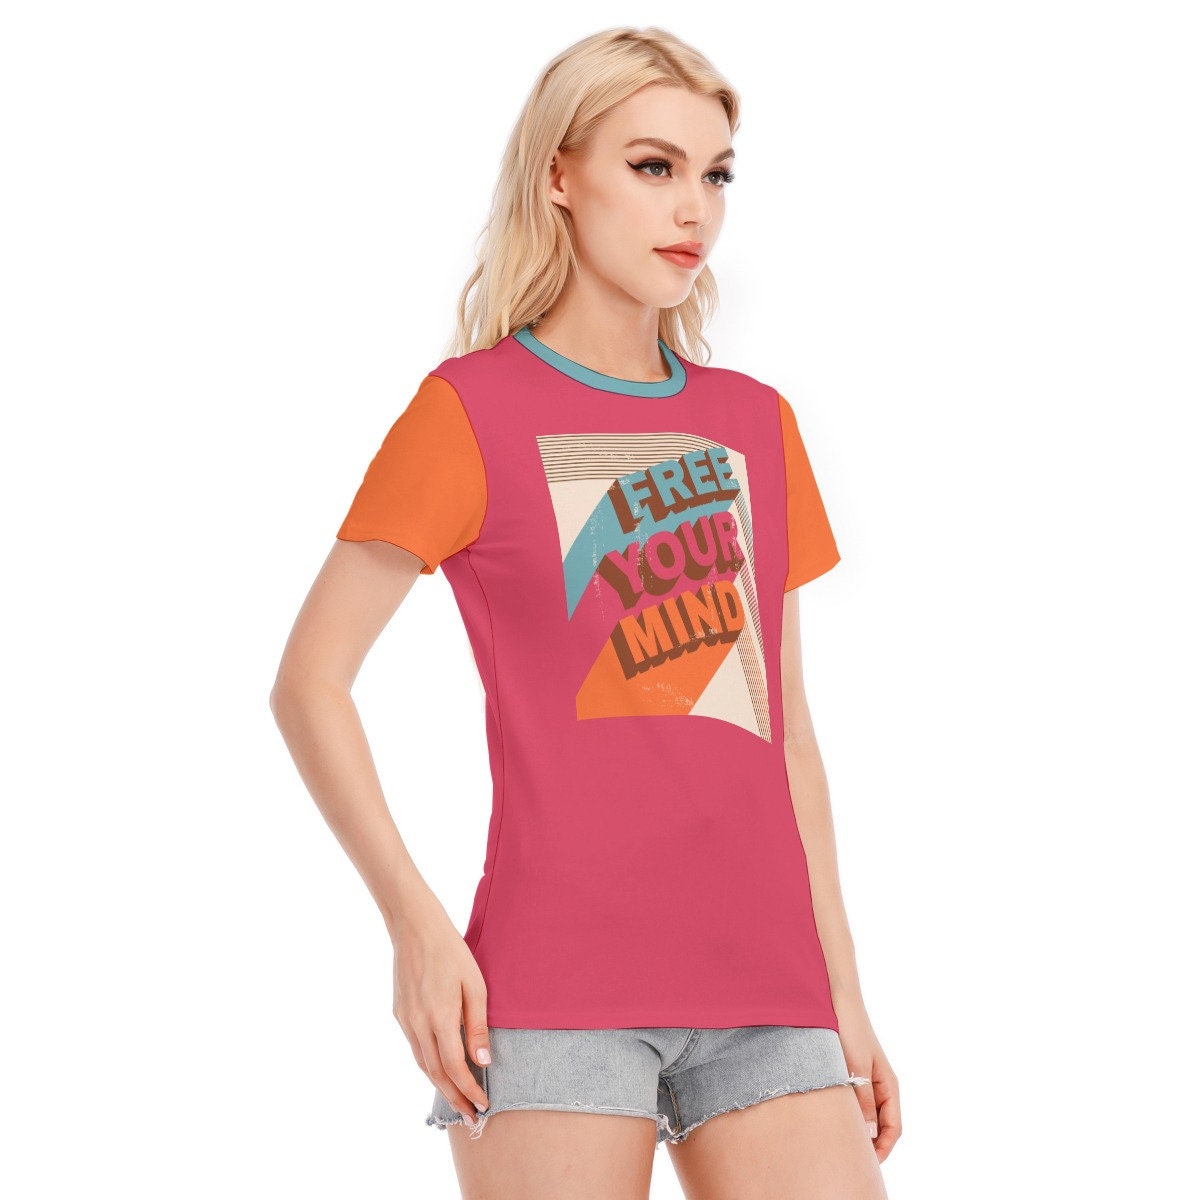 Retro T-shirt, Words Tshirts, Vintage Words Tshirt, Pink Words T-shirt, Hippie Tshirt Women, Vintage Style Tshirt, Fuchsia Pink T-shirt